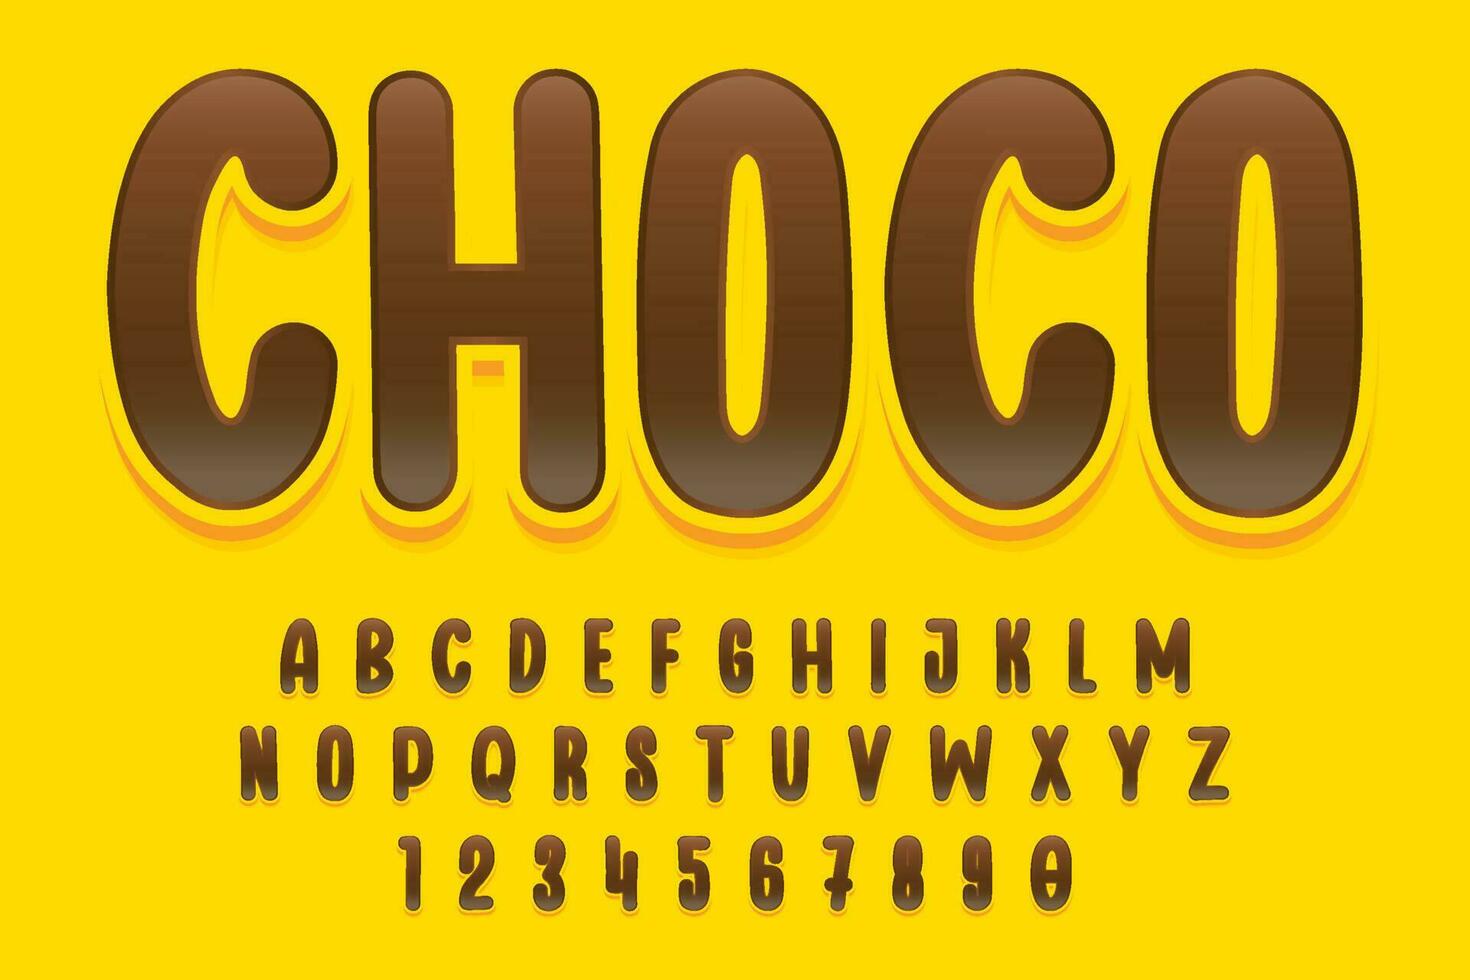 décoratif choco modifiable texte effet vecteur conception